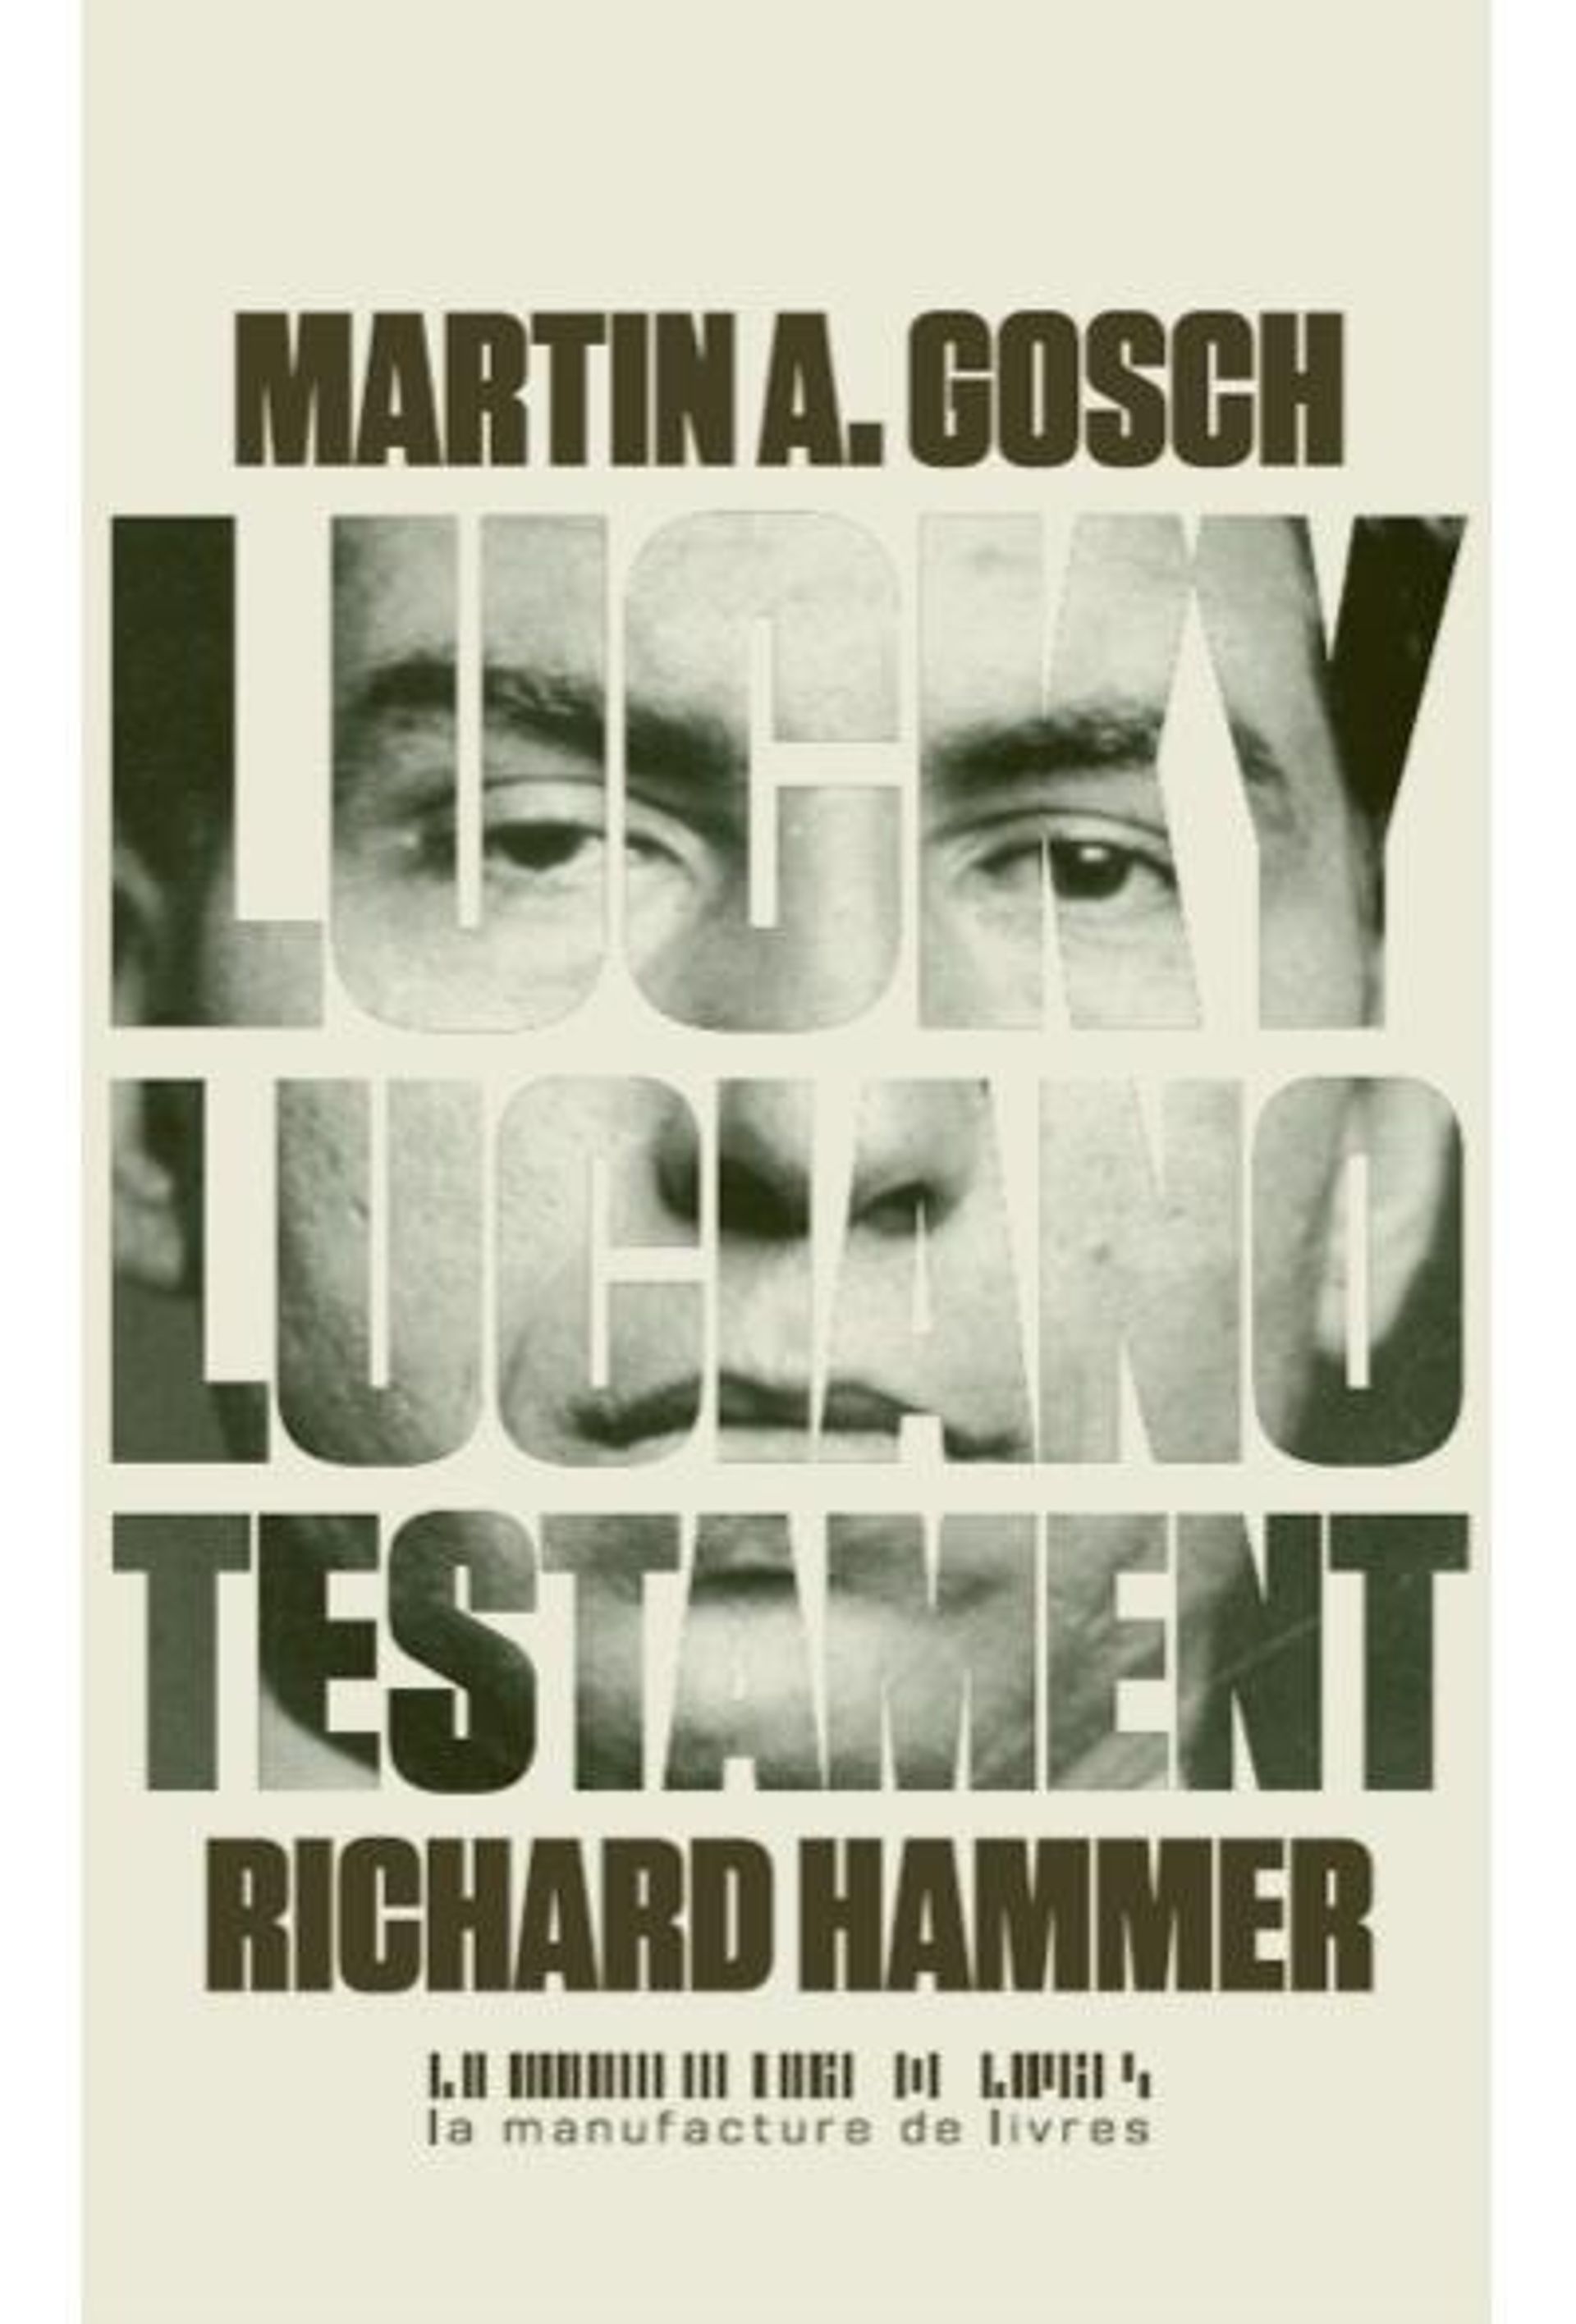 "Lucky Luciano - Testament" - Martin A Gosch & Richard Hammer – Ed La Manufacture de Livres 